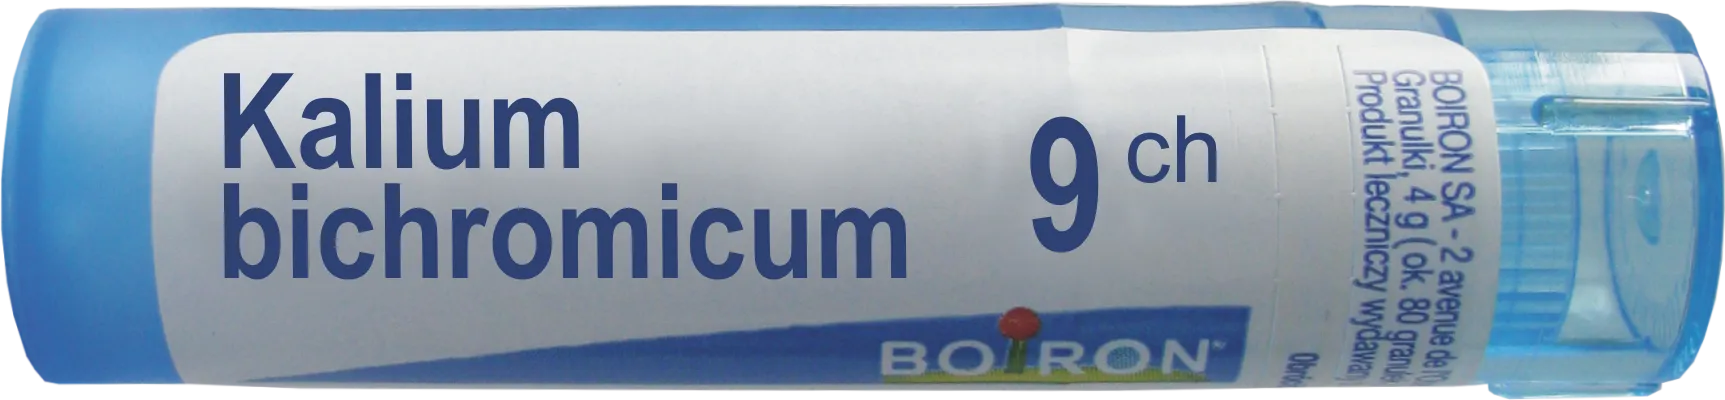 Boiron Kalium bichromicum 9 CH, granulki, 4 g